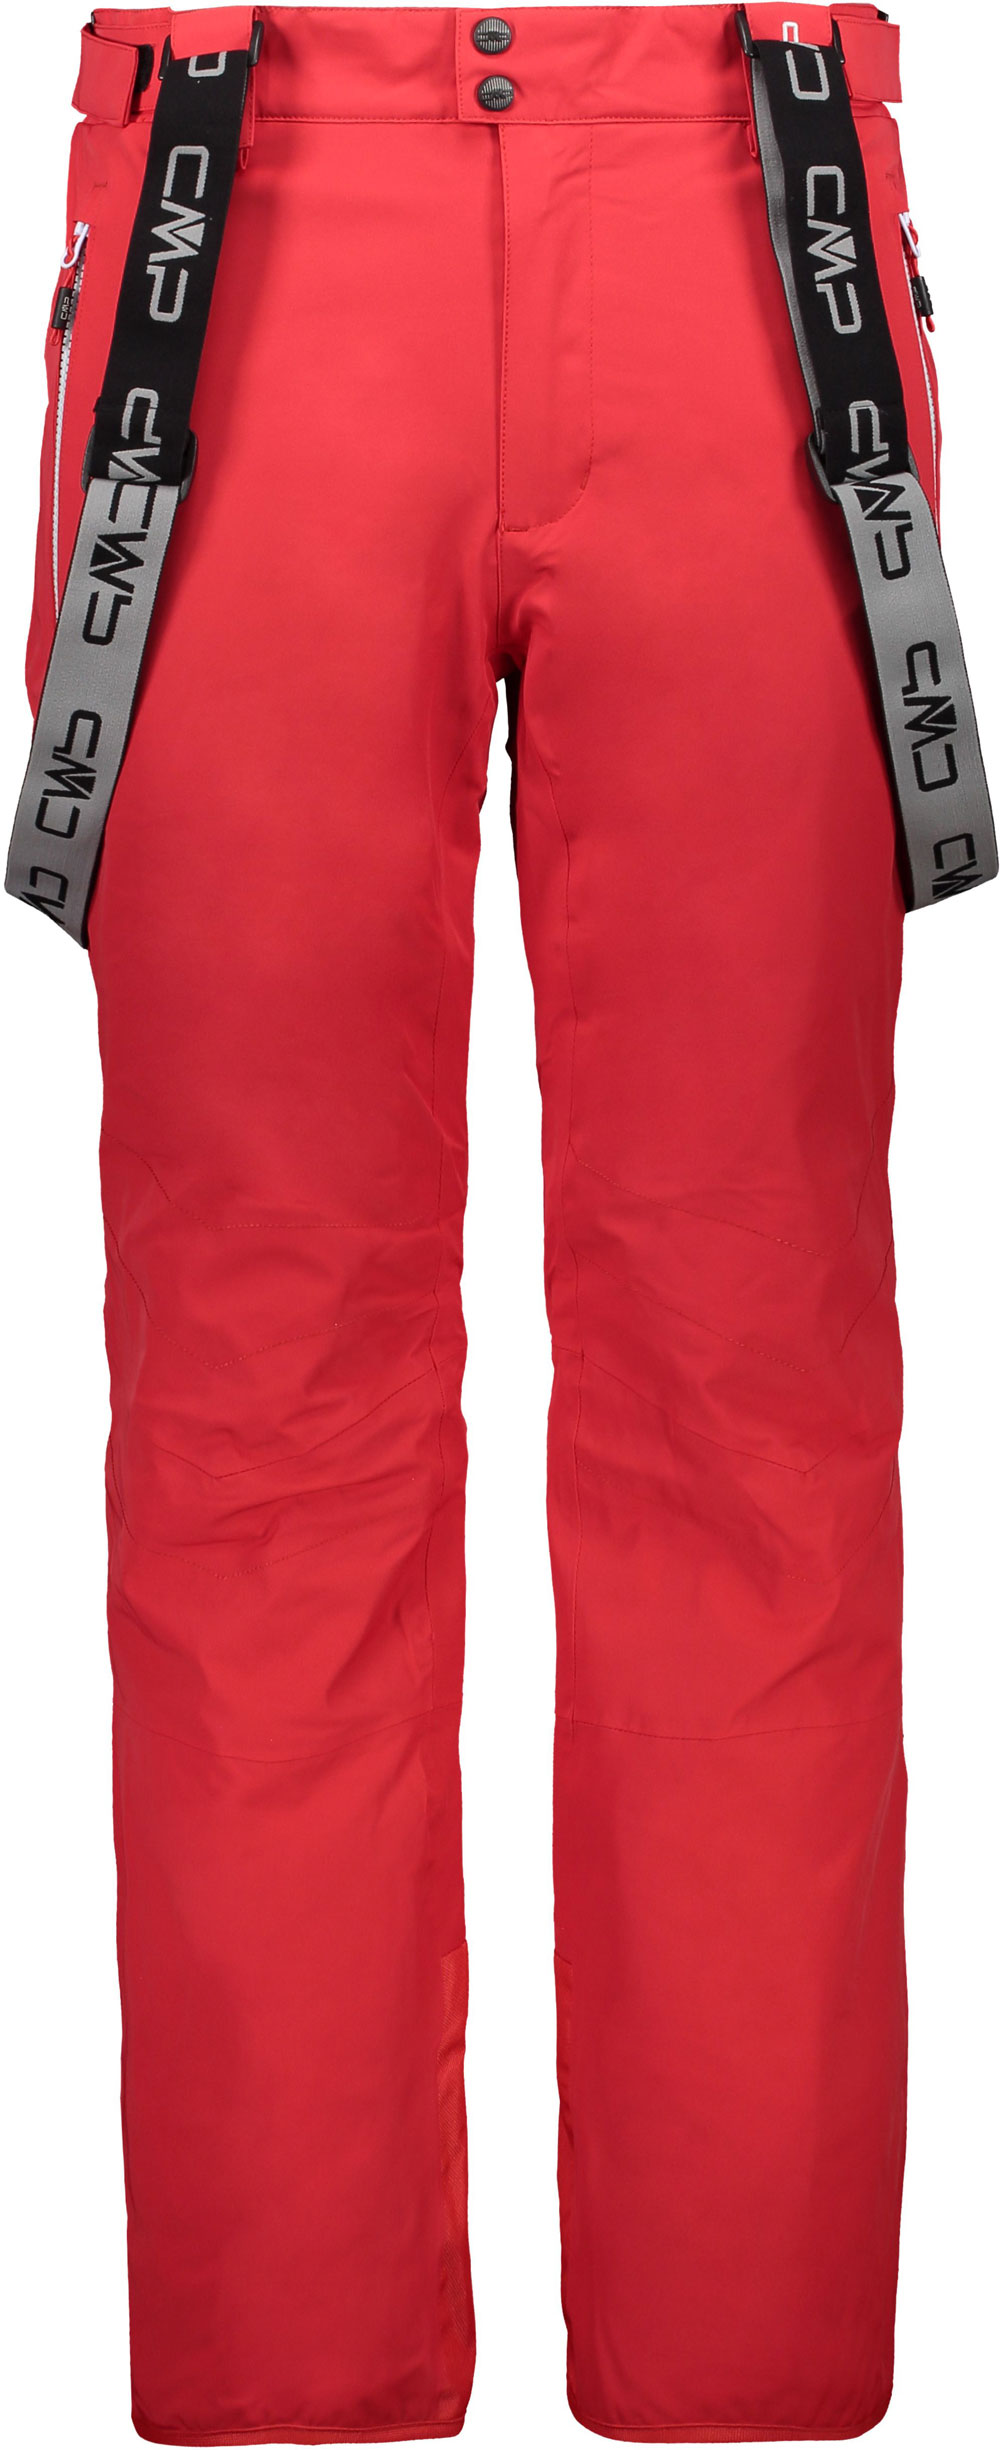 Men’s ski trousers